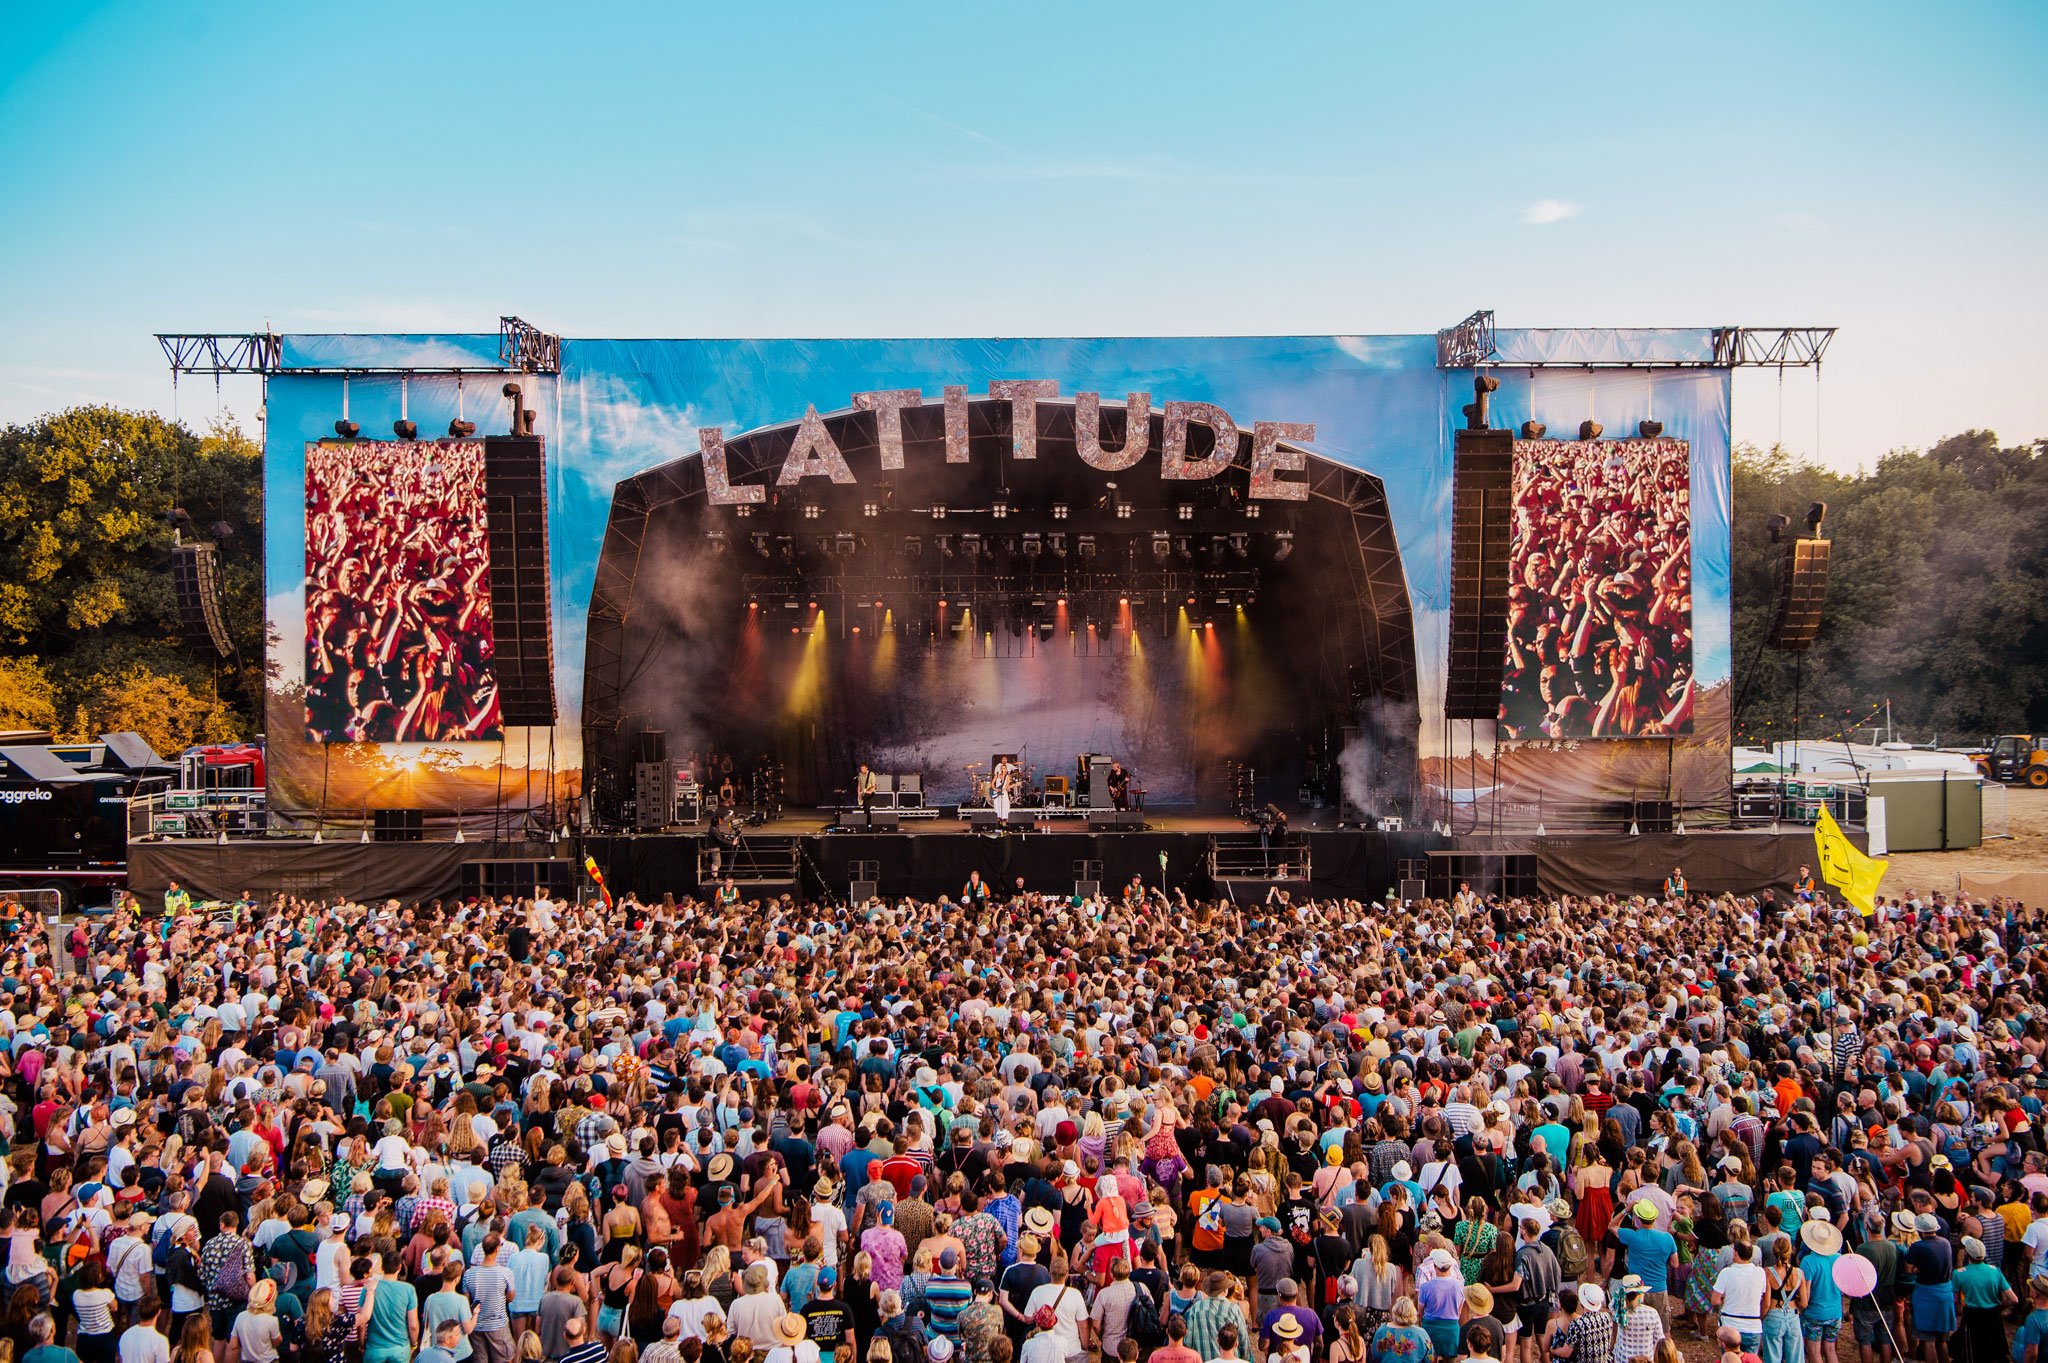 Mii de persoane prezente la ”Latitude Festival”